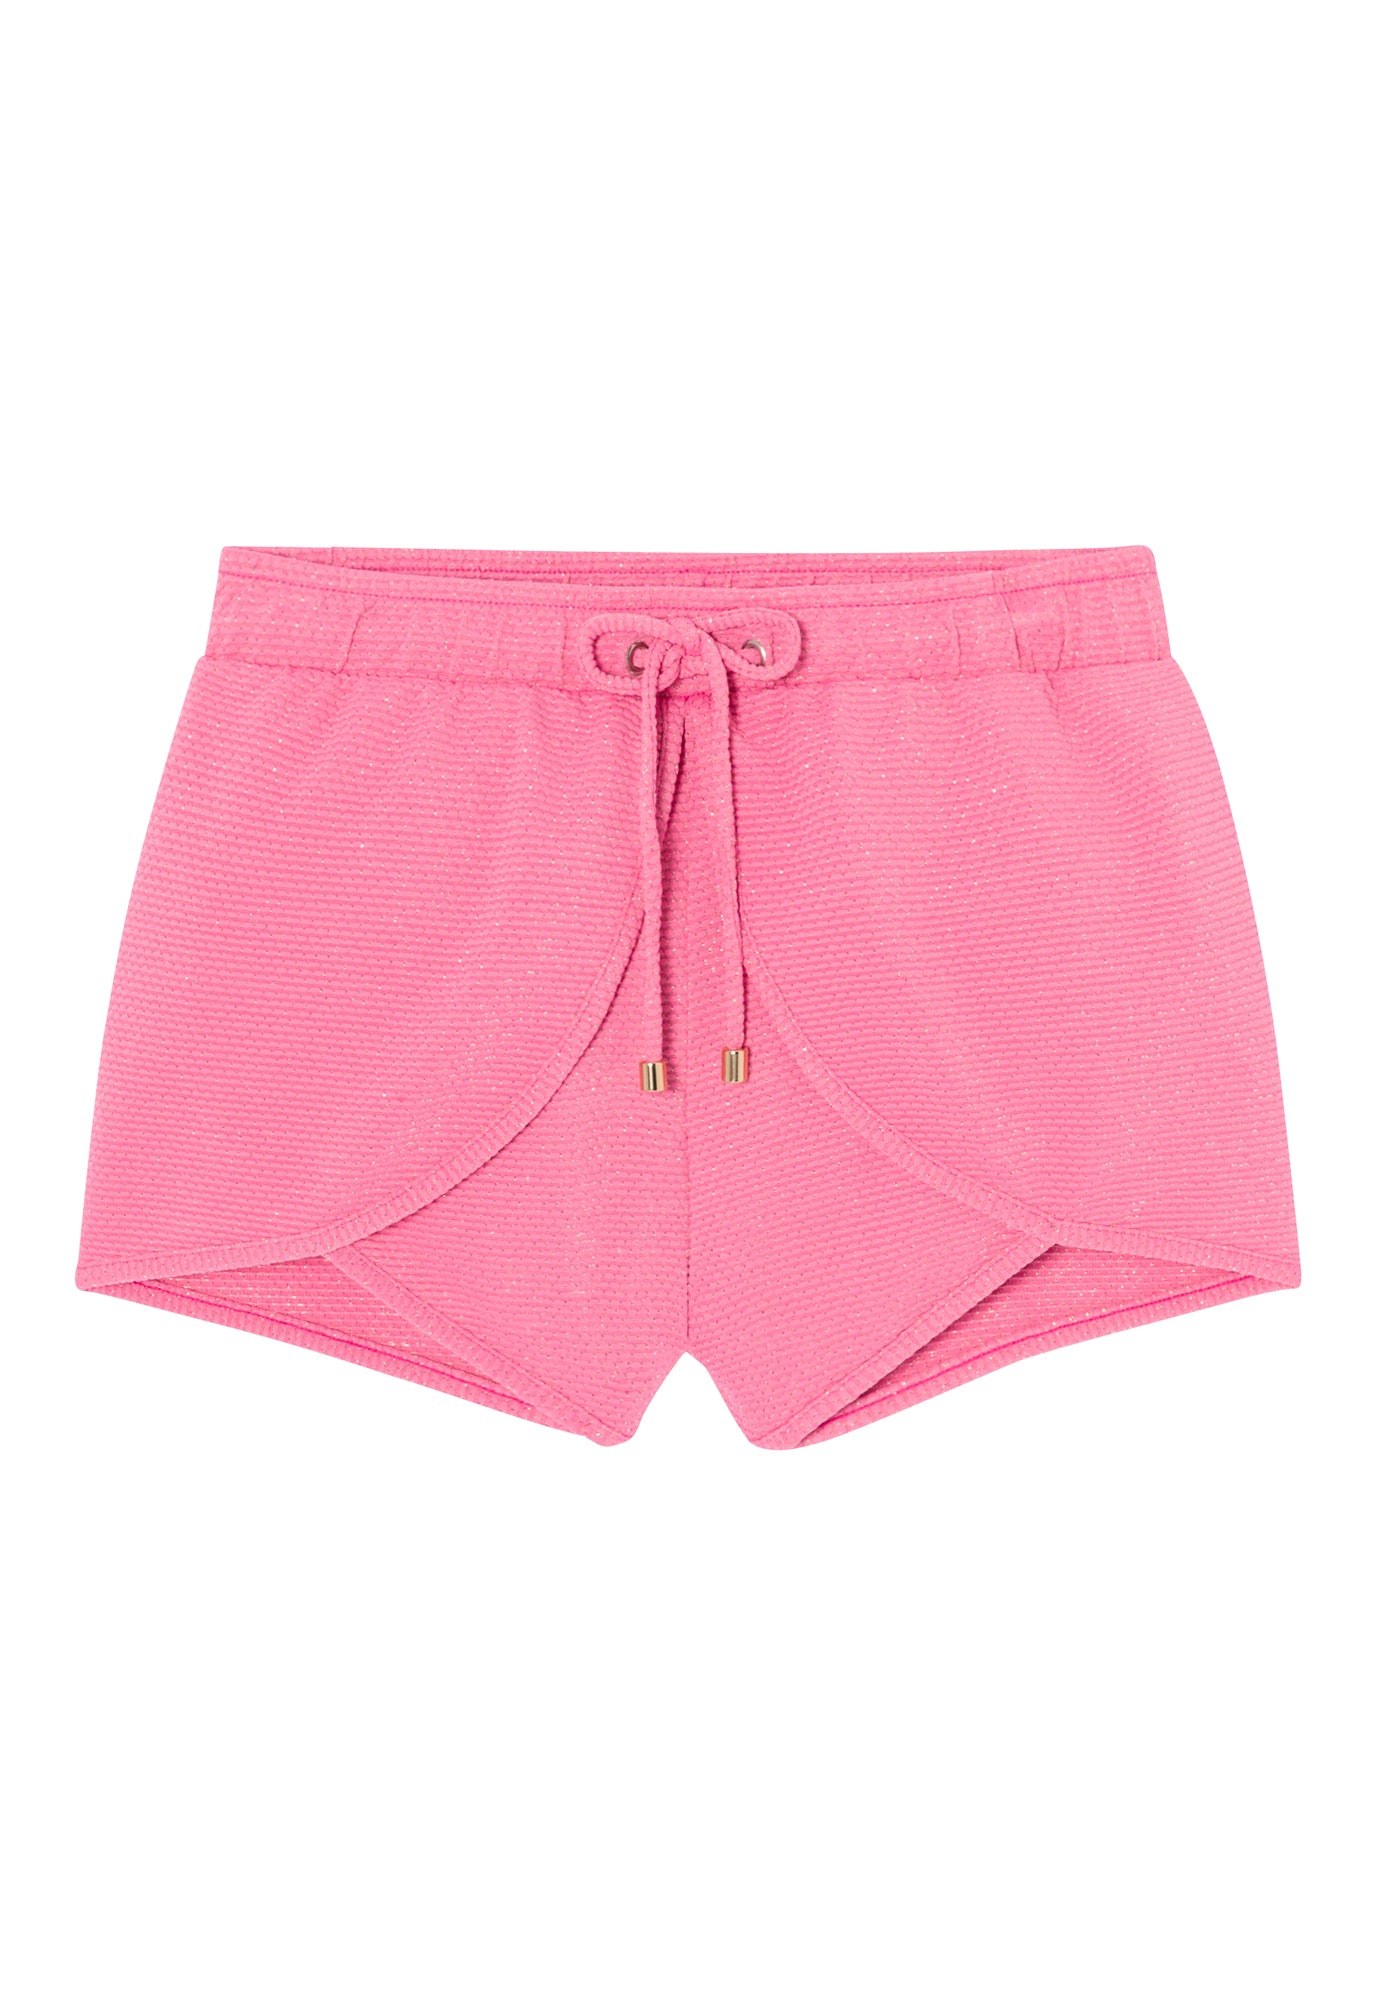 Girls' swim shorts, pink/gold